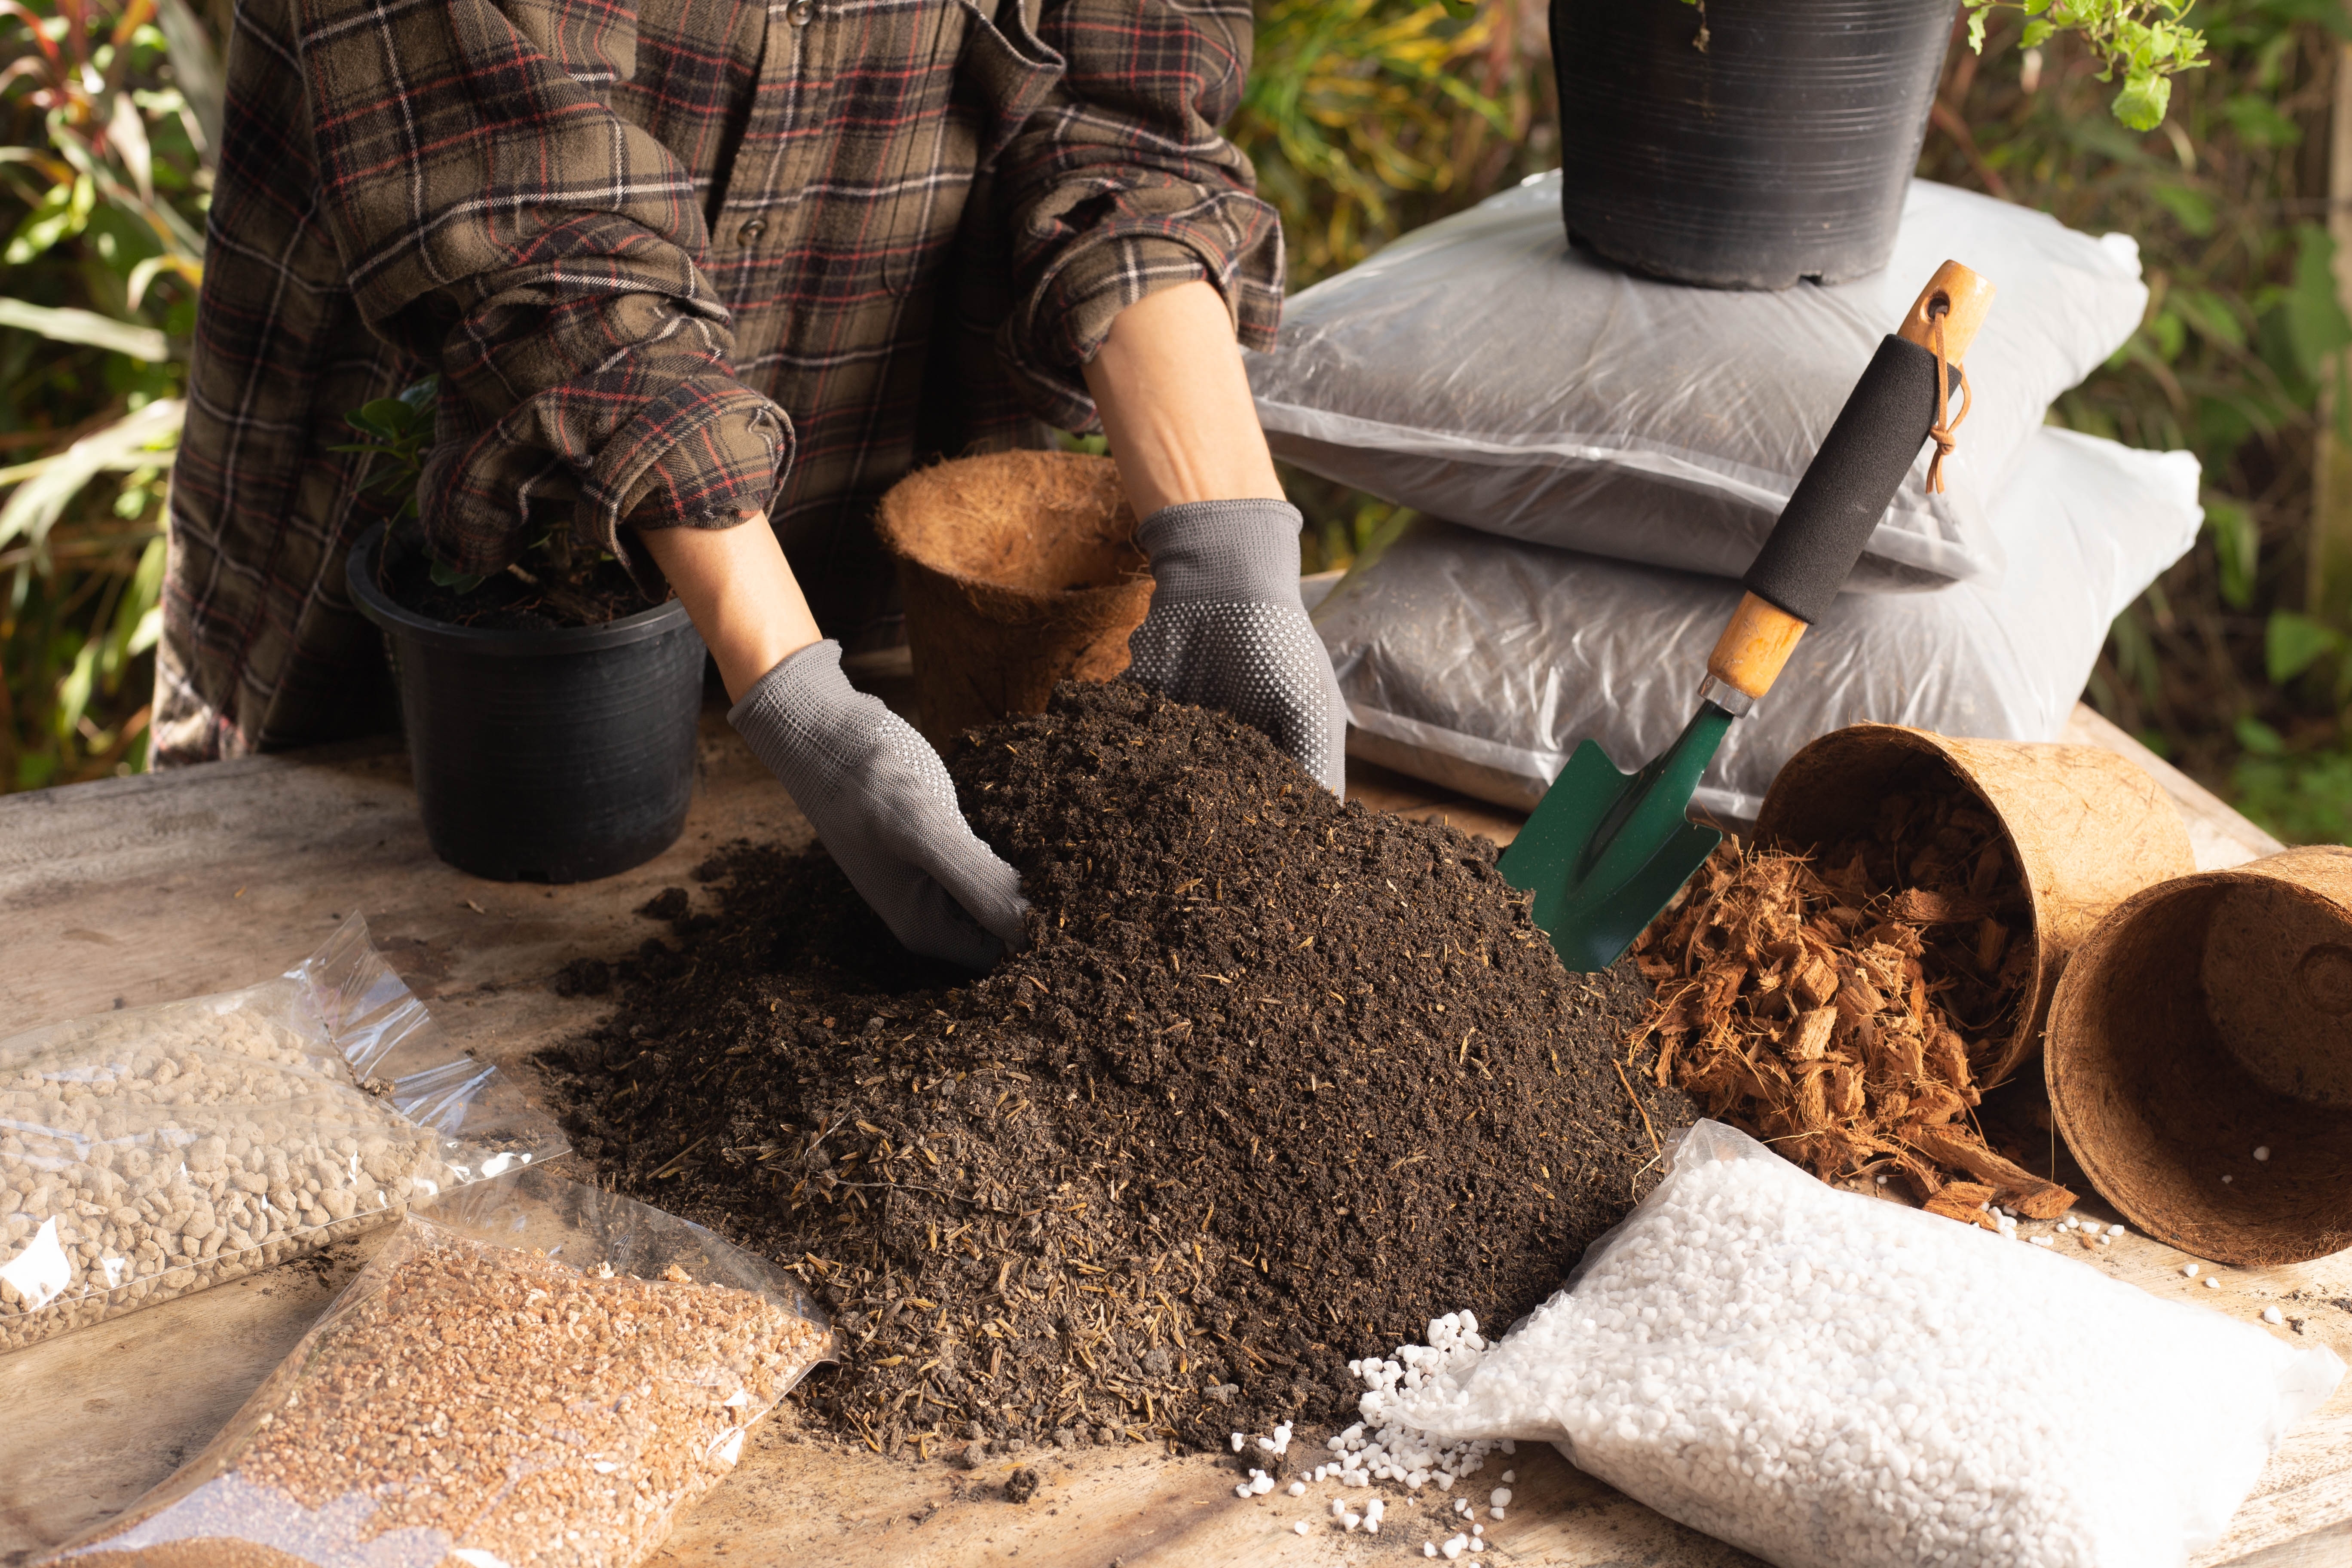 Le jardinage nécessite souvent l’achat de terreau, mais une fois le sac vide, que faire ? Plutôt que de le jeter, savez-vous qu’il peut devenir un outil très utile dans votre jardin ? Copyright (c) 2022 Parkin Srihawong/Shutterstock.